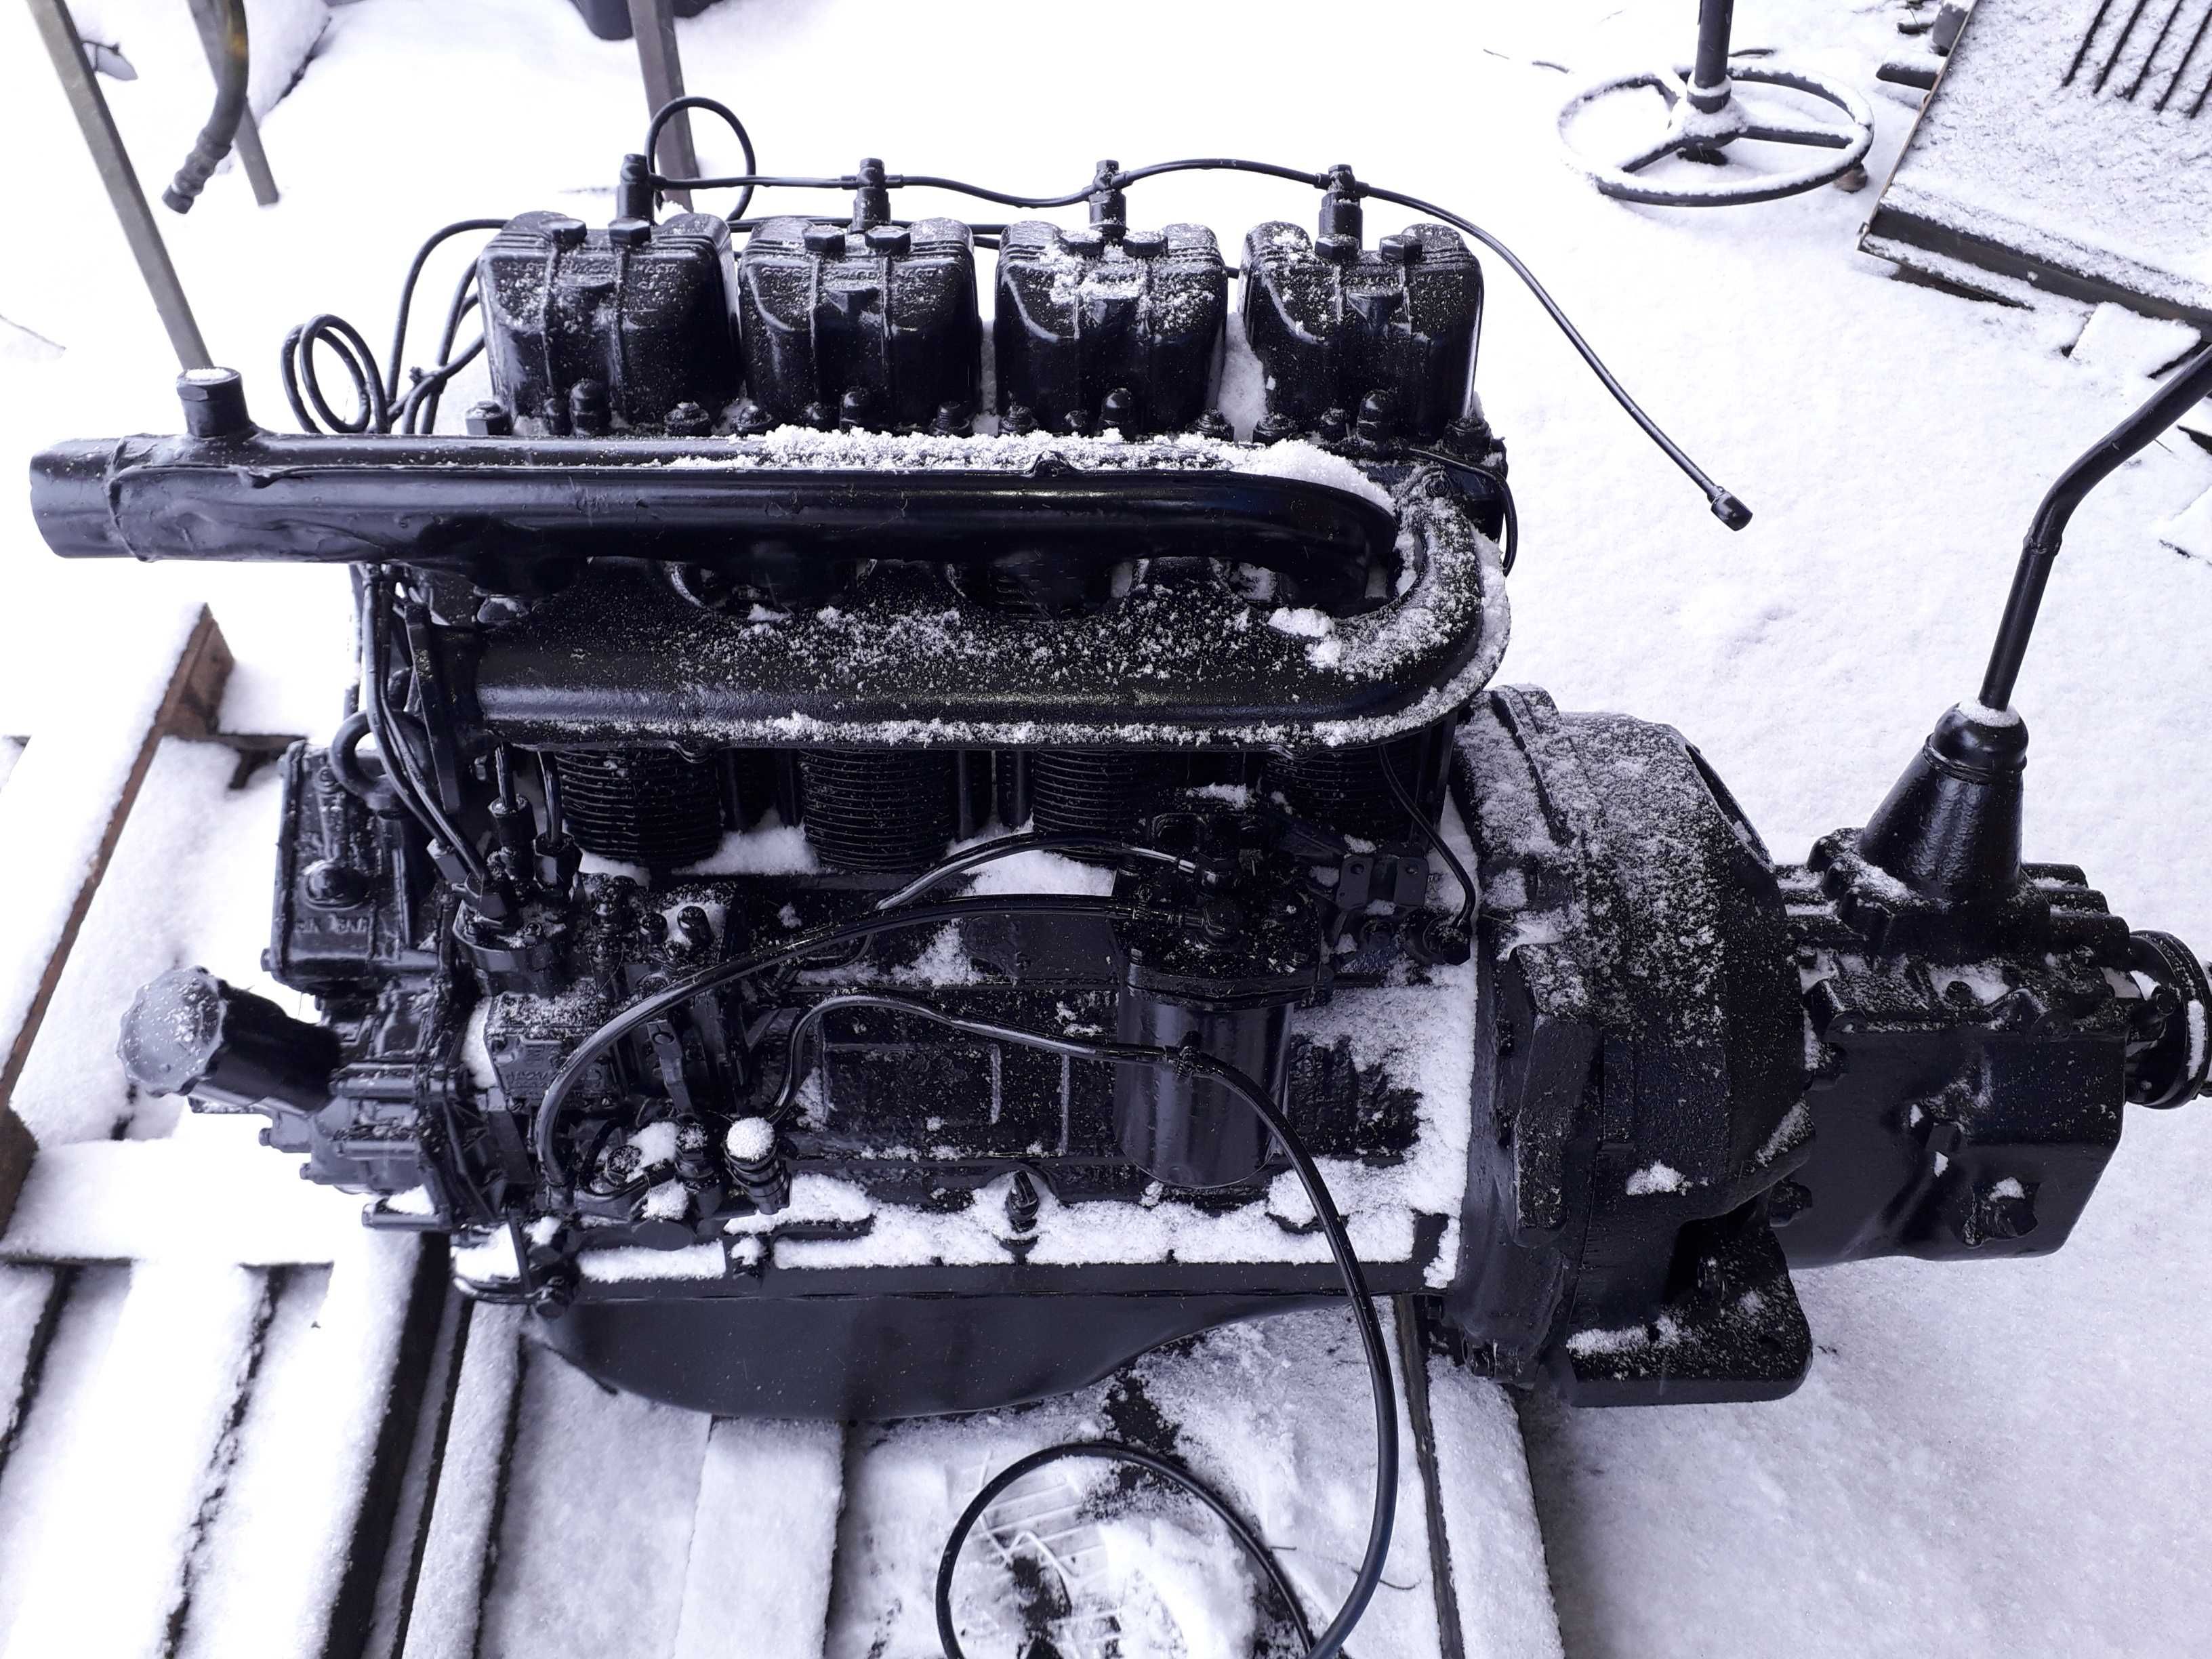 Комплект деталей для встановлення двигуна Д144 (т-40) а також на Д240